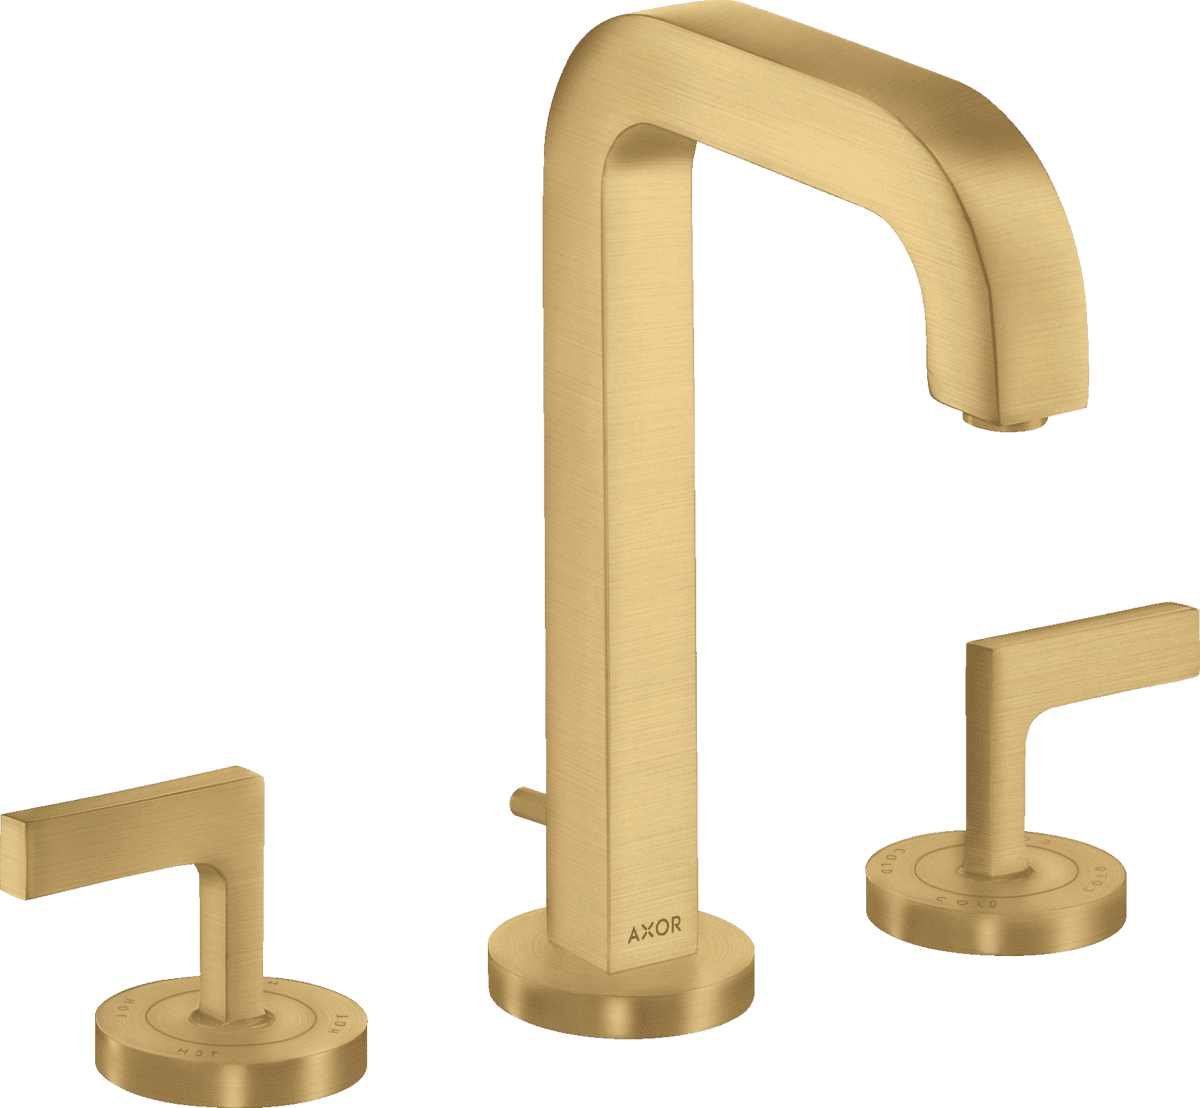 εικόνα του HANSGROHE AXOR Citterio 3-hole basin mixer 170 with spout 140 mm, lever handles, escutcheons and pop-up waste set #39135250 - Brushed Gold Optic